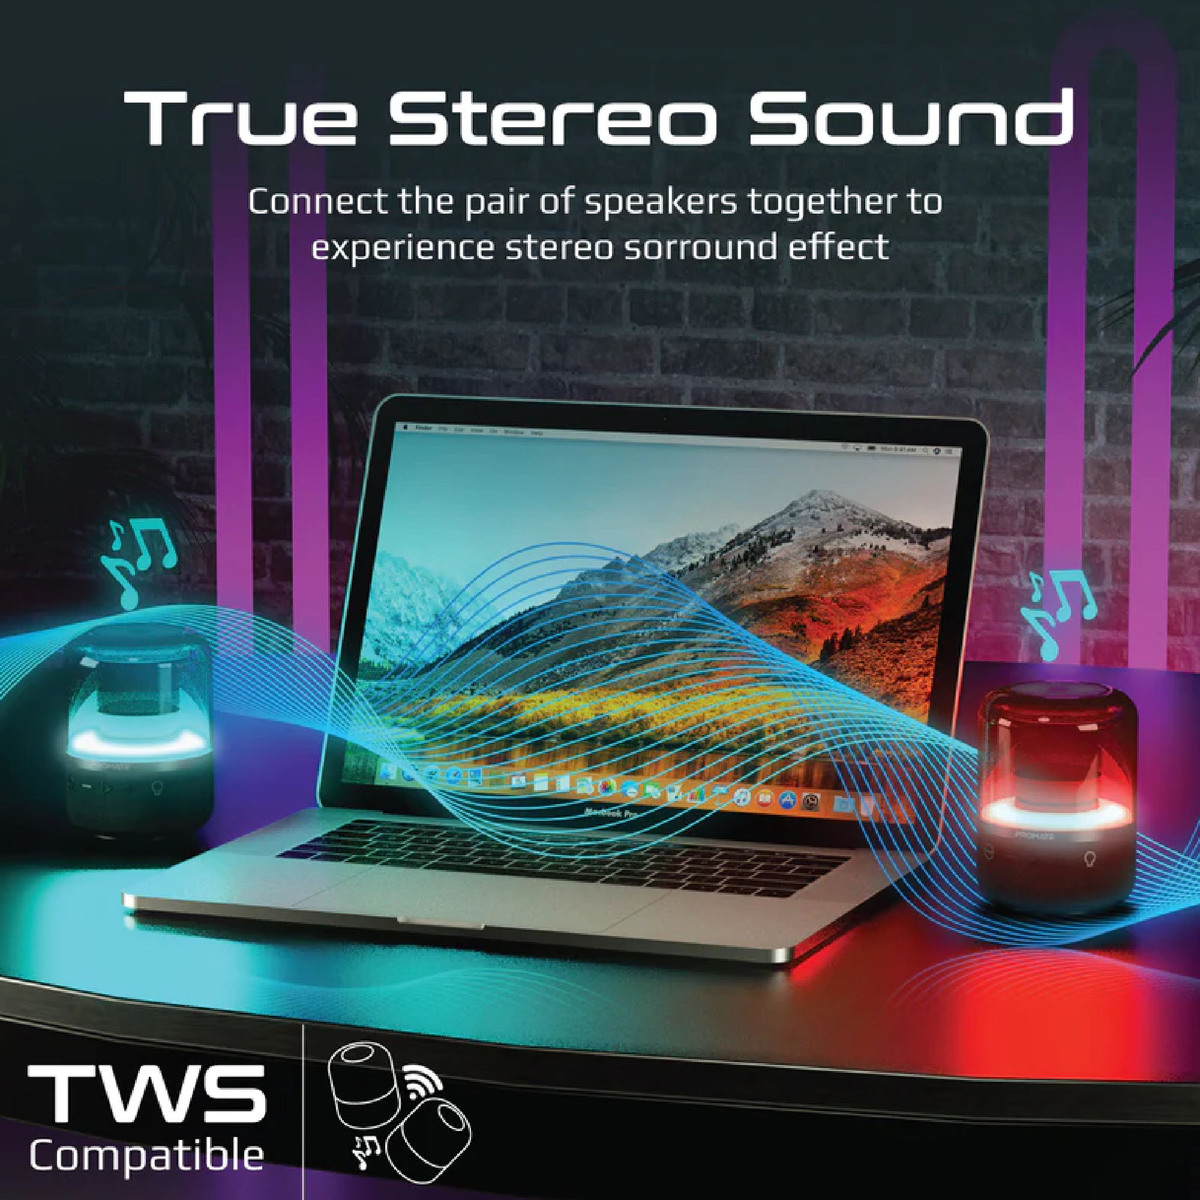 Promate LumiSound 360° Surround Sound Speaker Glitz